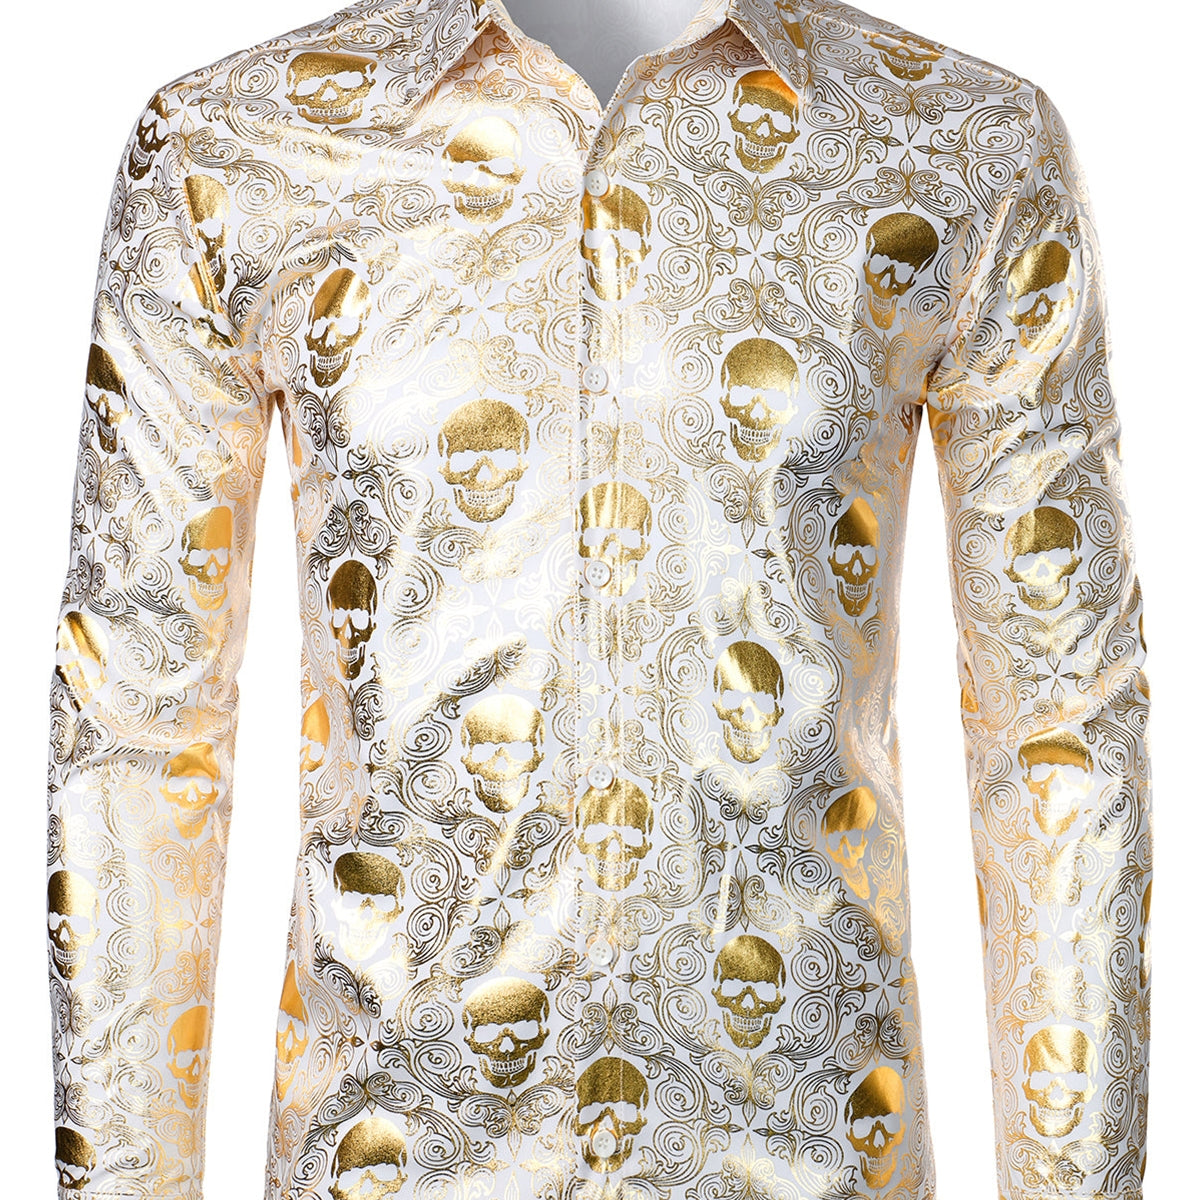 Men's Luxury Skull Design Paisley Long sleeve Shirt